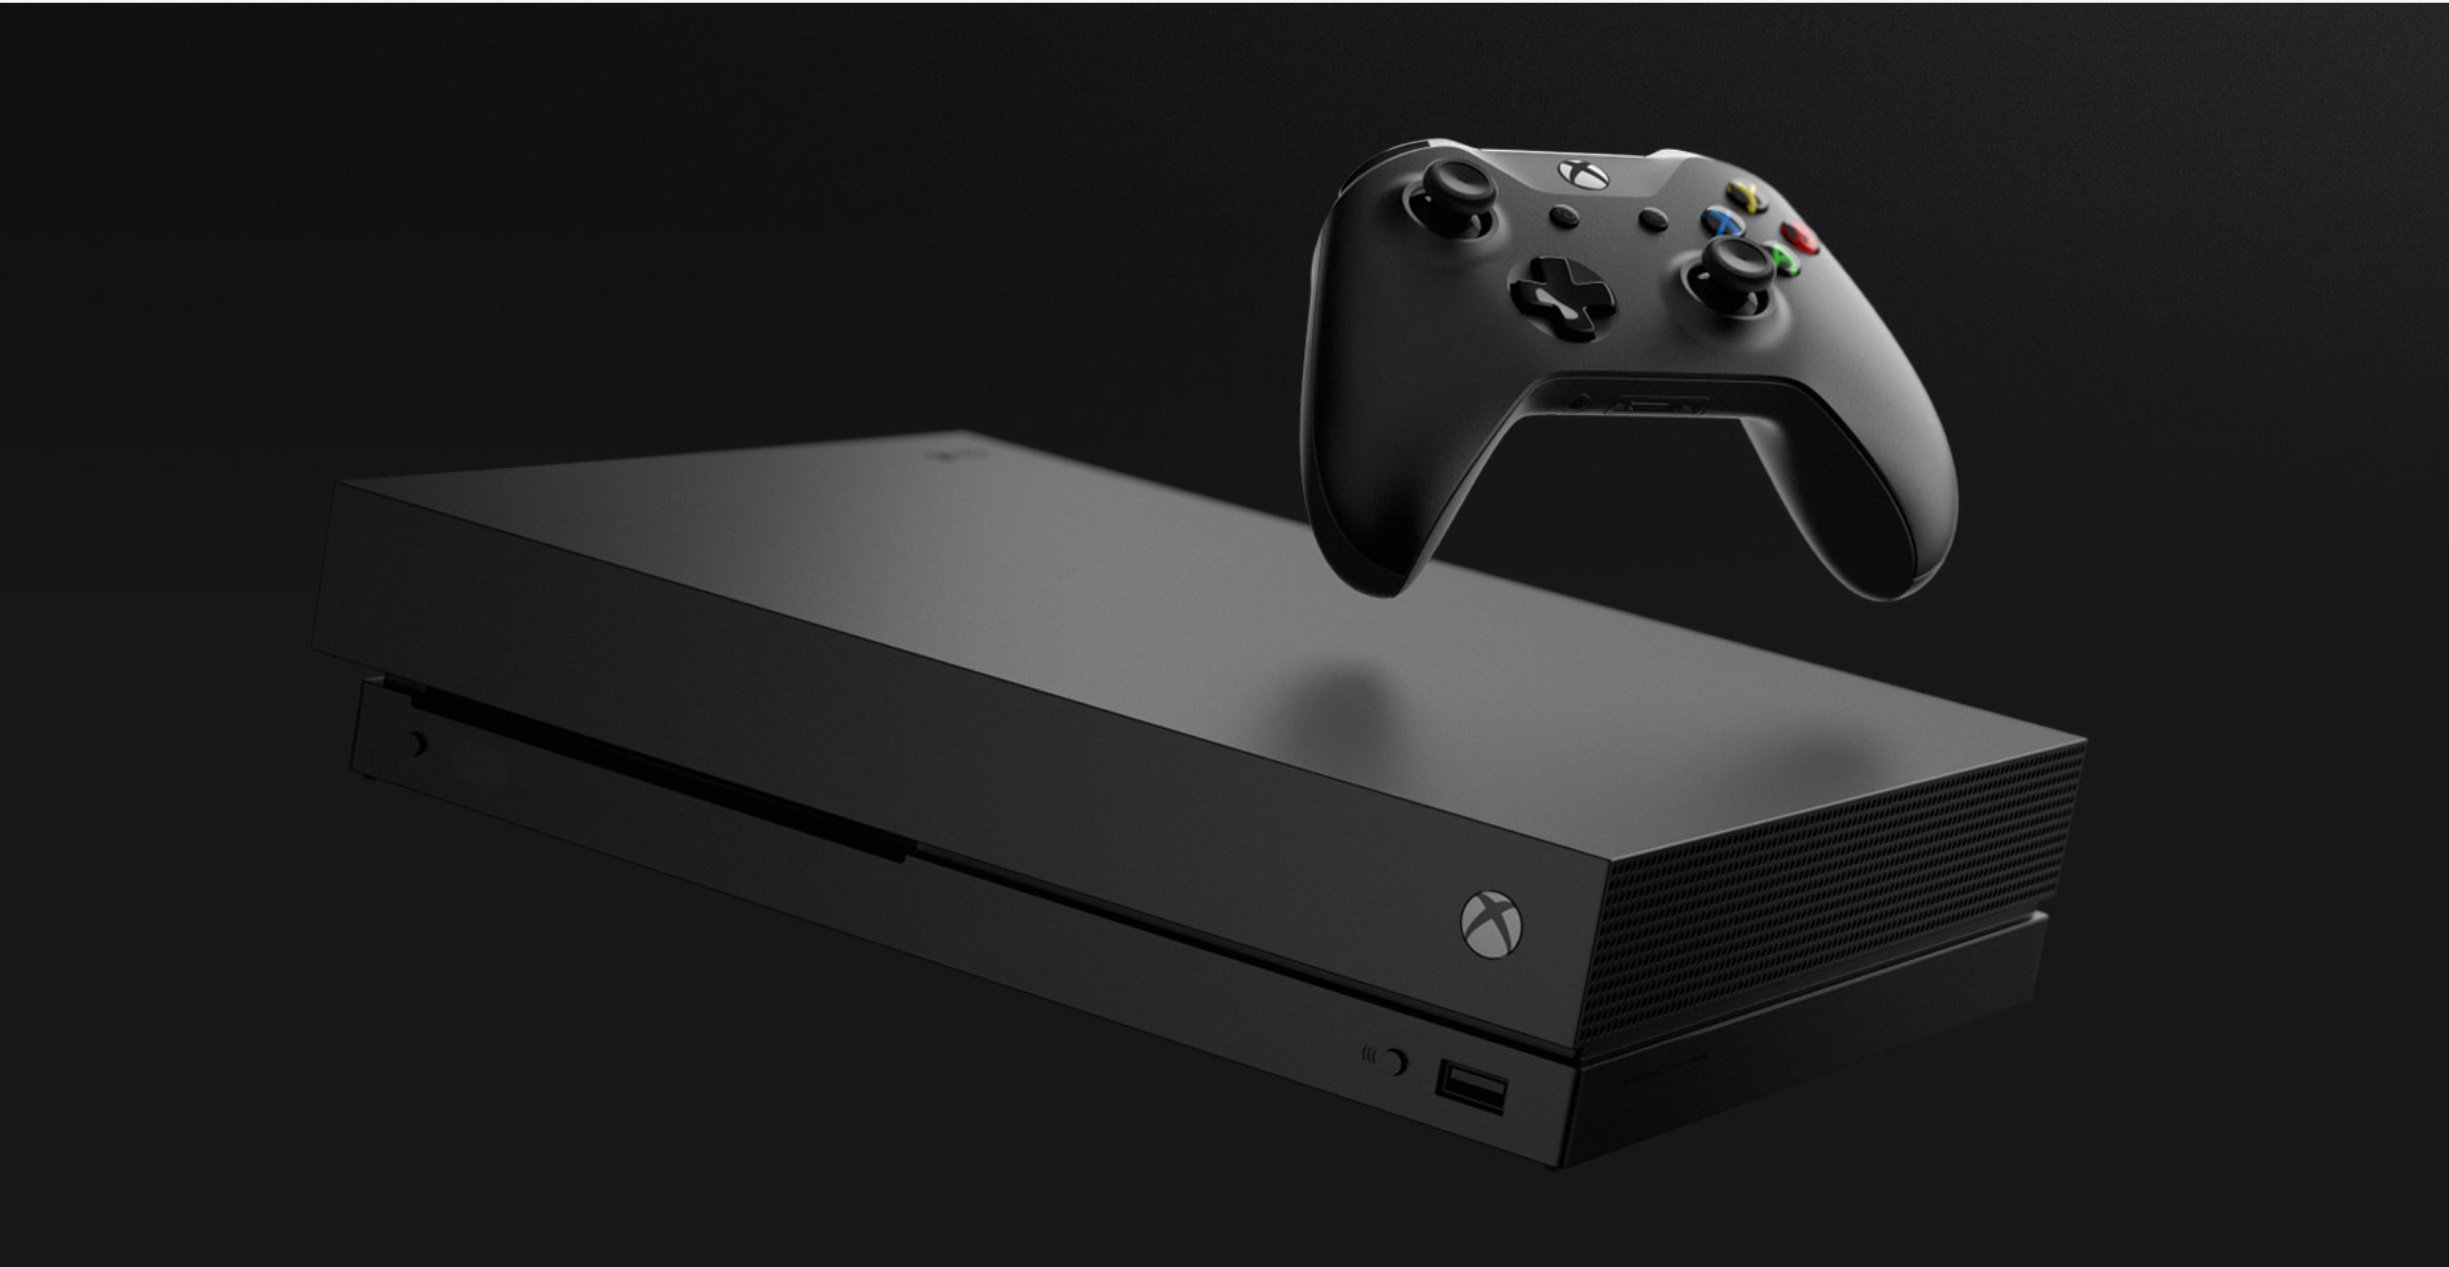 Notre Test De La Xbox One X 4k Hdr Et Dolby Atmos Geeks And Com